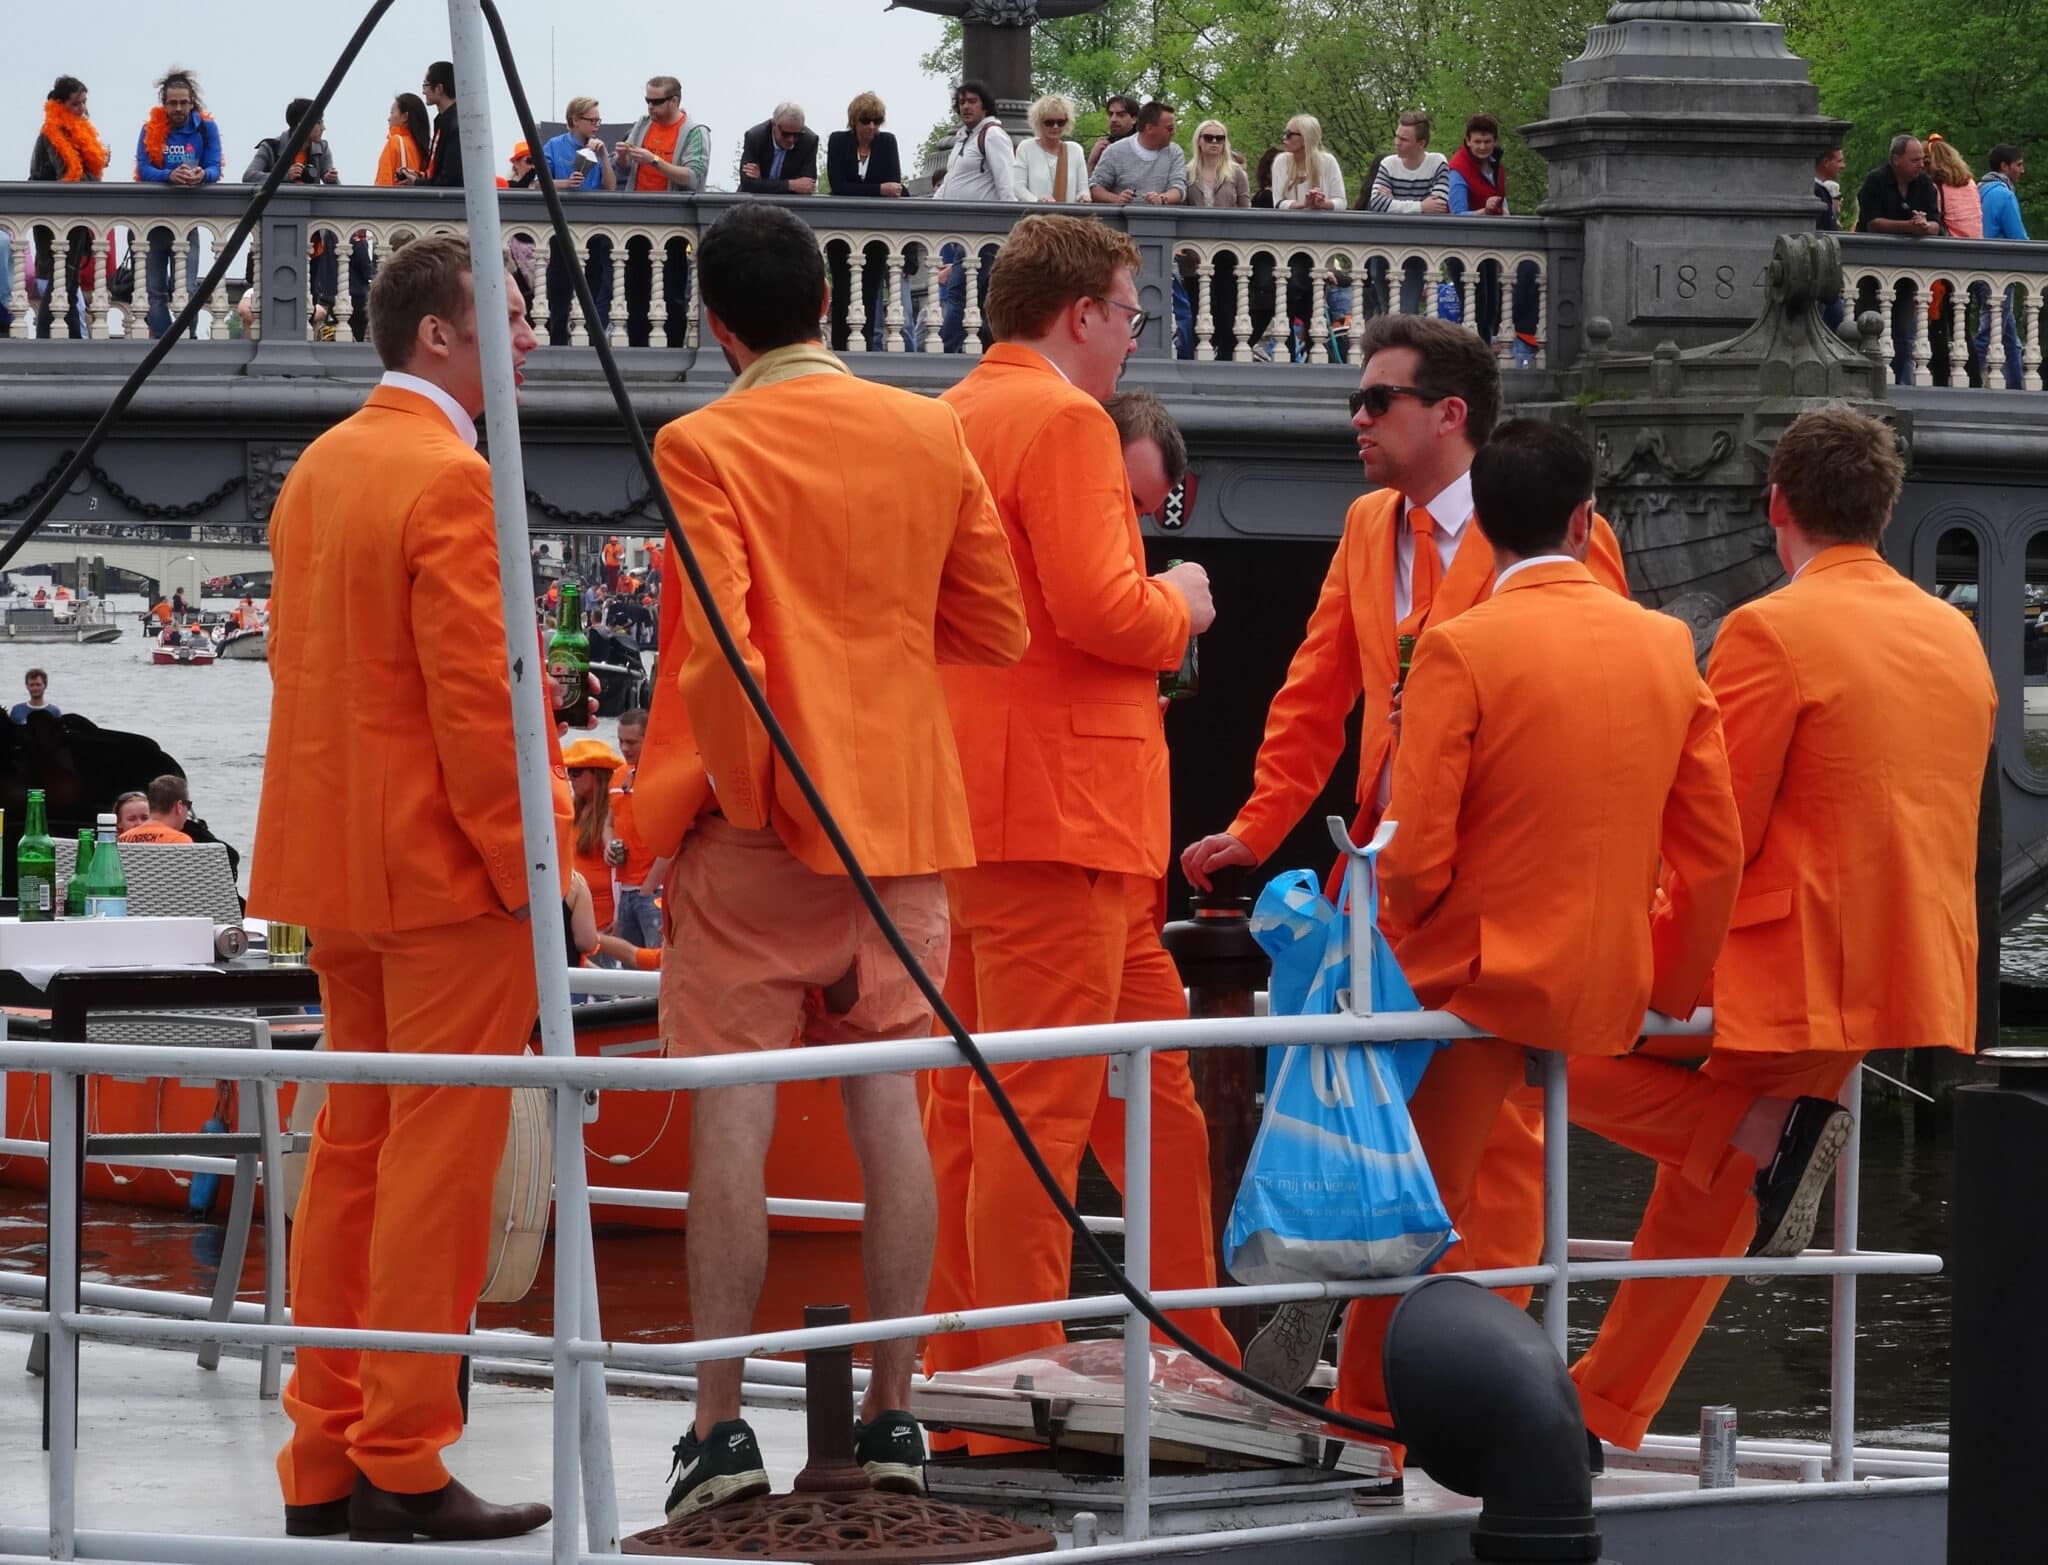 Eventos turísticos en Países Bajos: Koningsdag